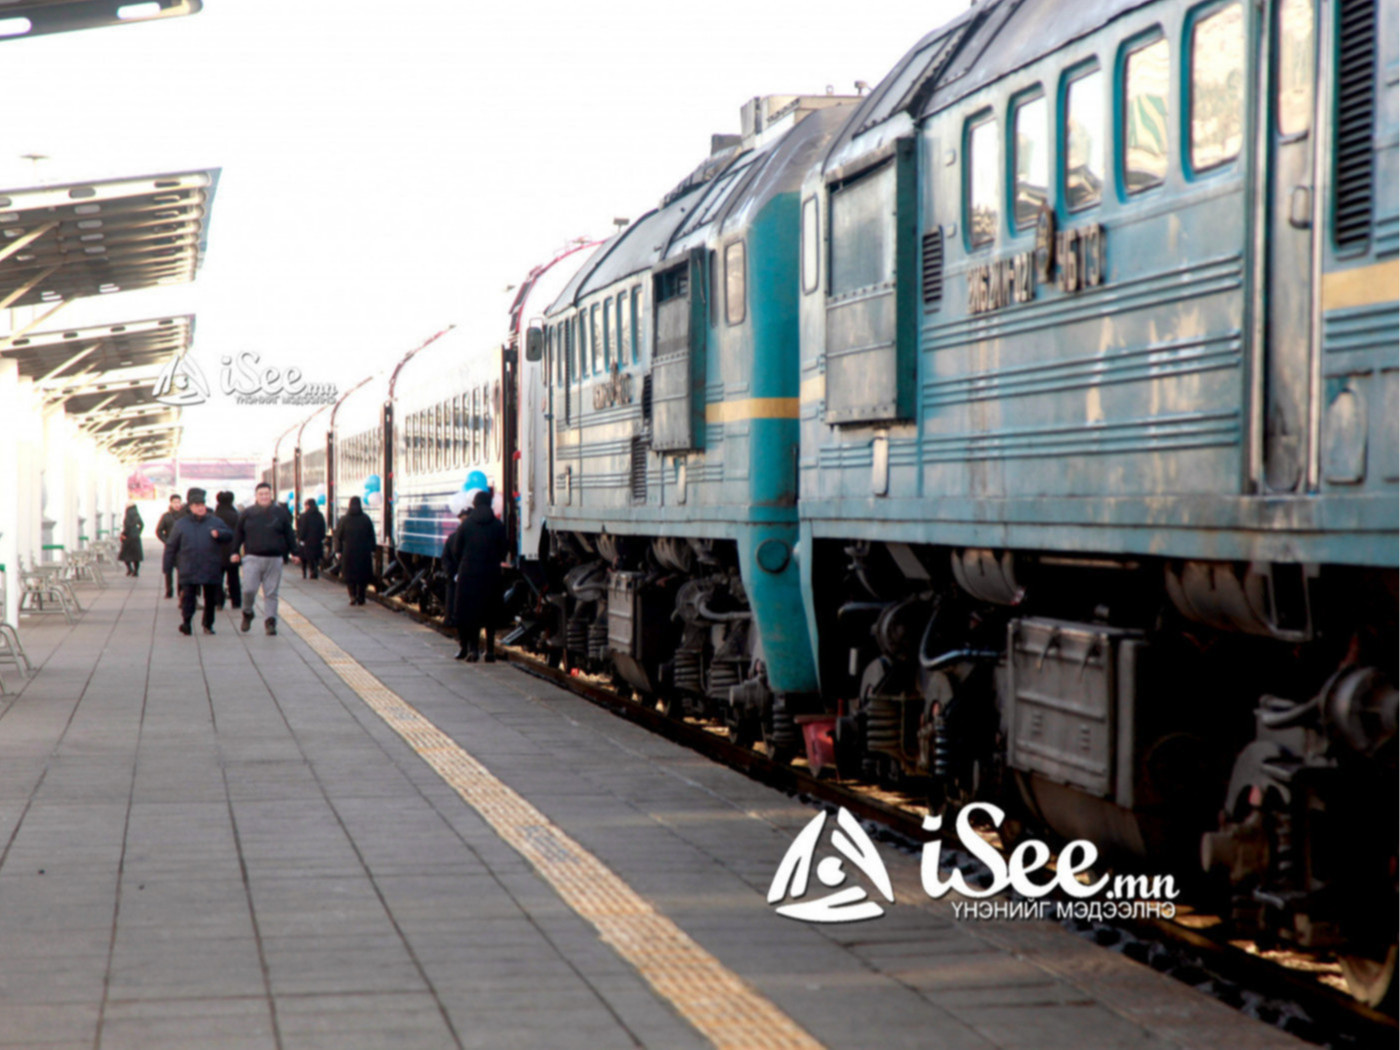 Замын-Үүд-Улаанбаатар чиглэлийн галт тэрэгний хуваарьт өөрчлөлт оруулжээ